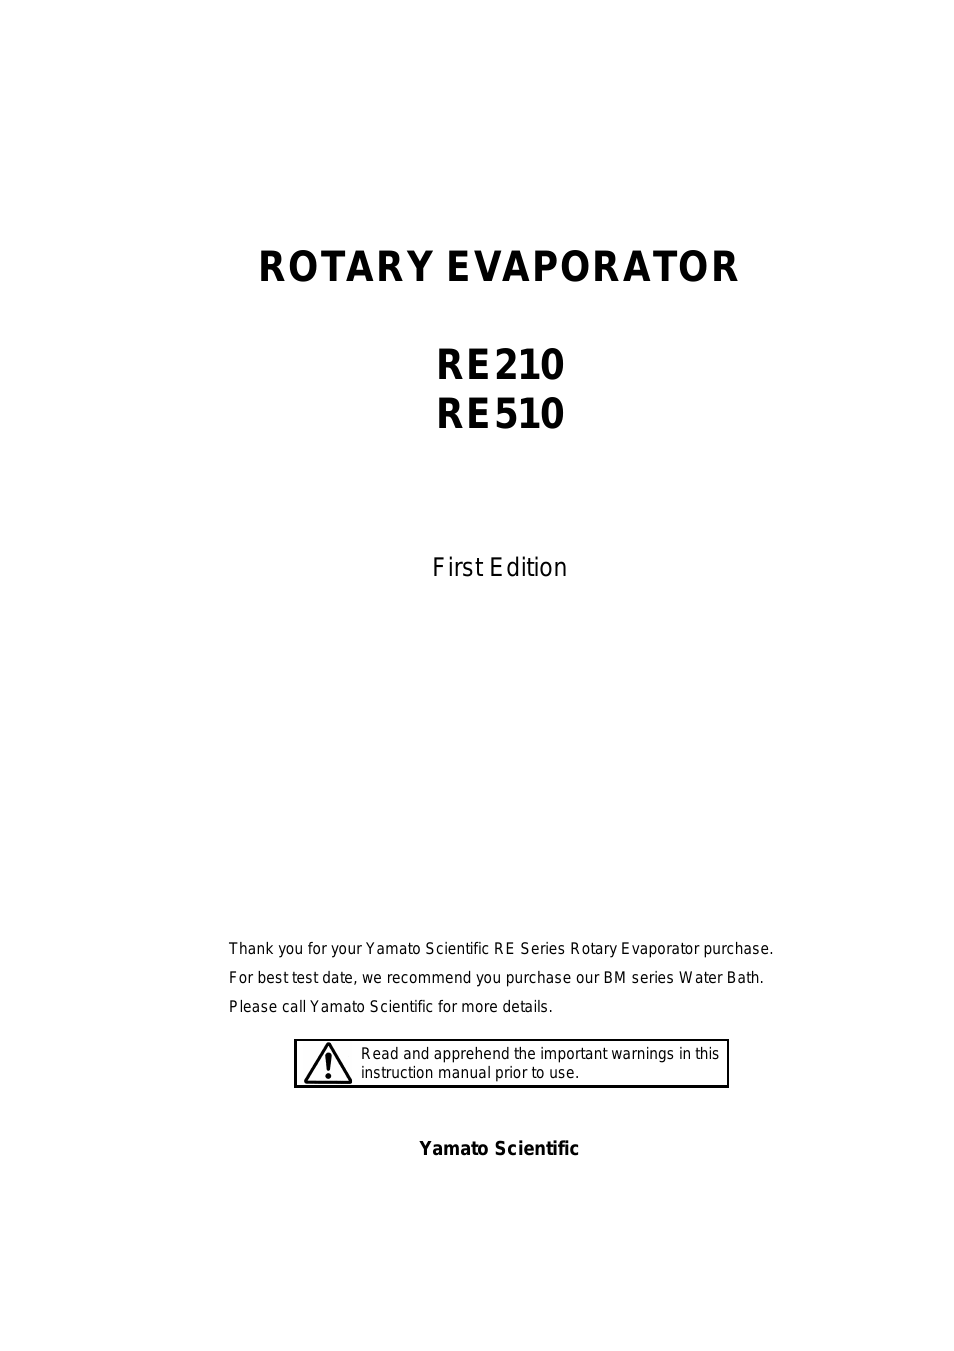 RE510 Evaporators, Rotary